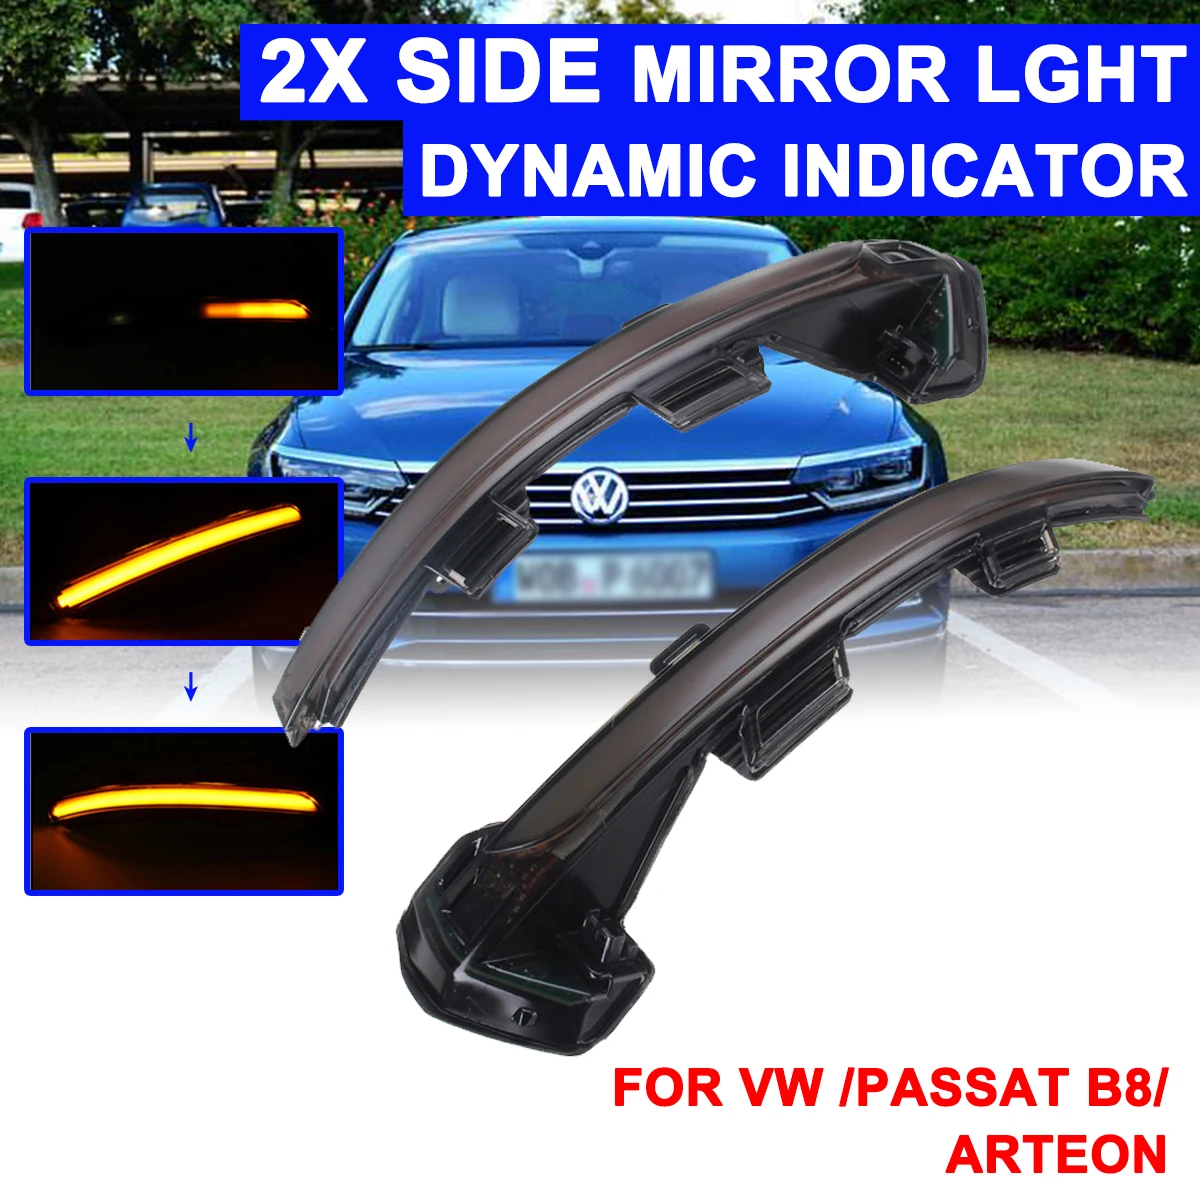 

1 пара сигнальных ламп для зеркала заднего вида светодиодный подсветильник ка для автомобиля, динамический поворотный желтый свет для VW Passat...